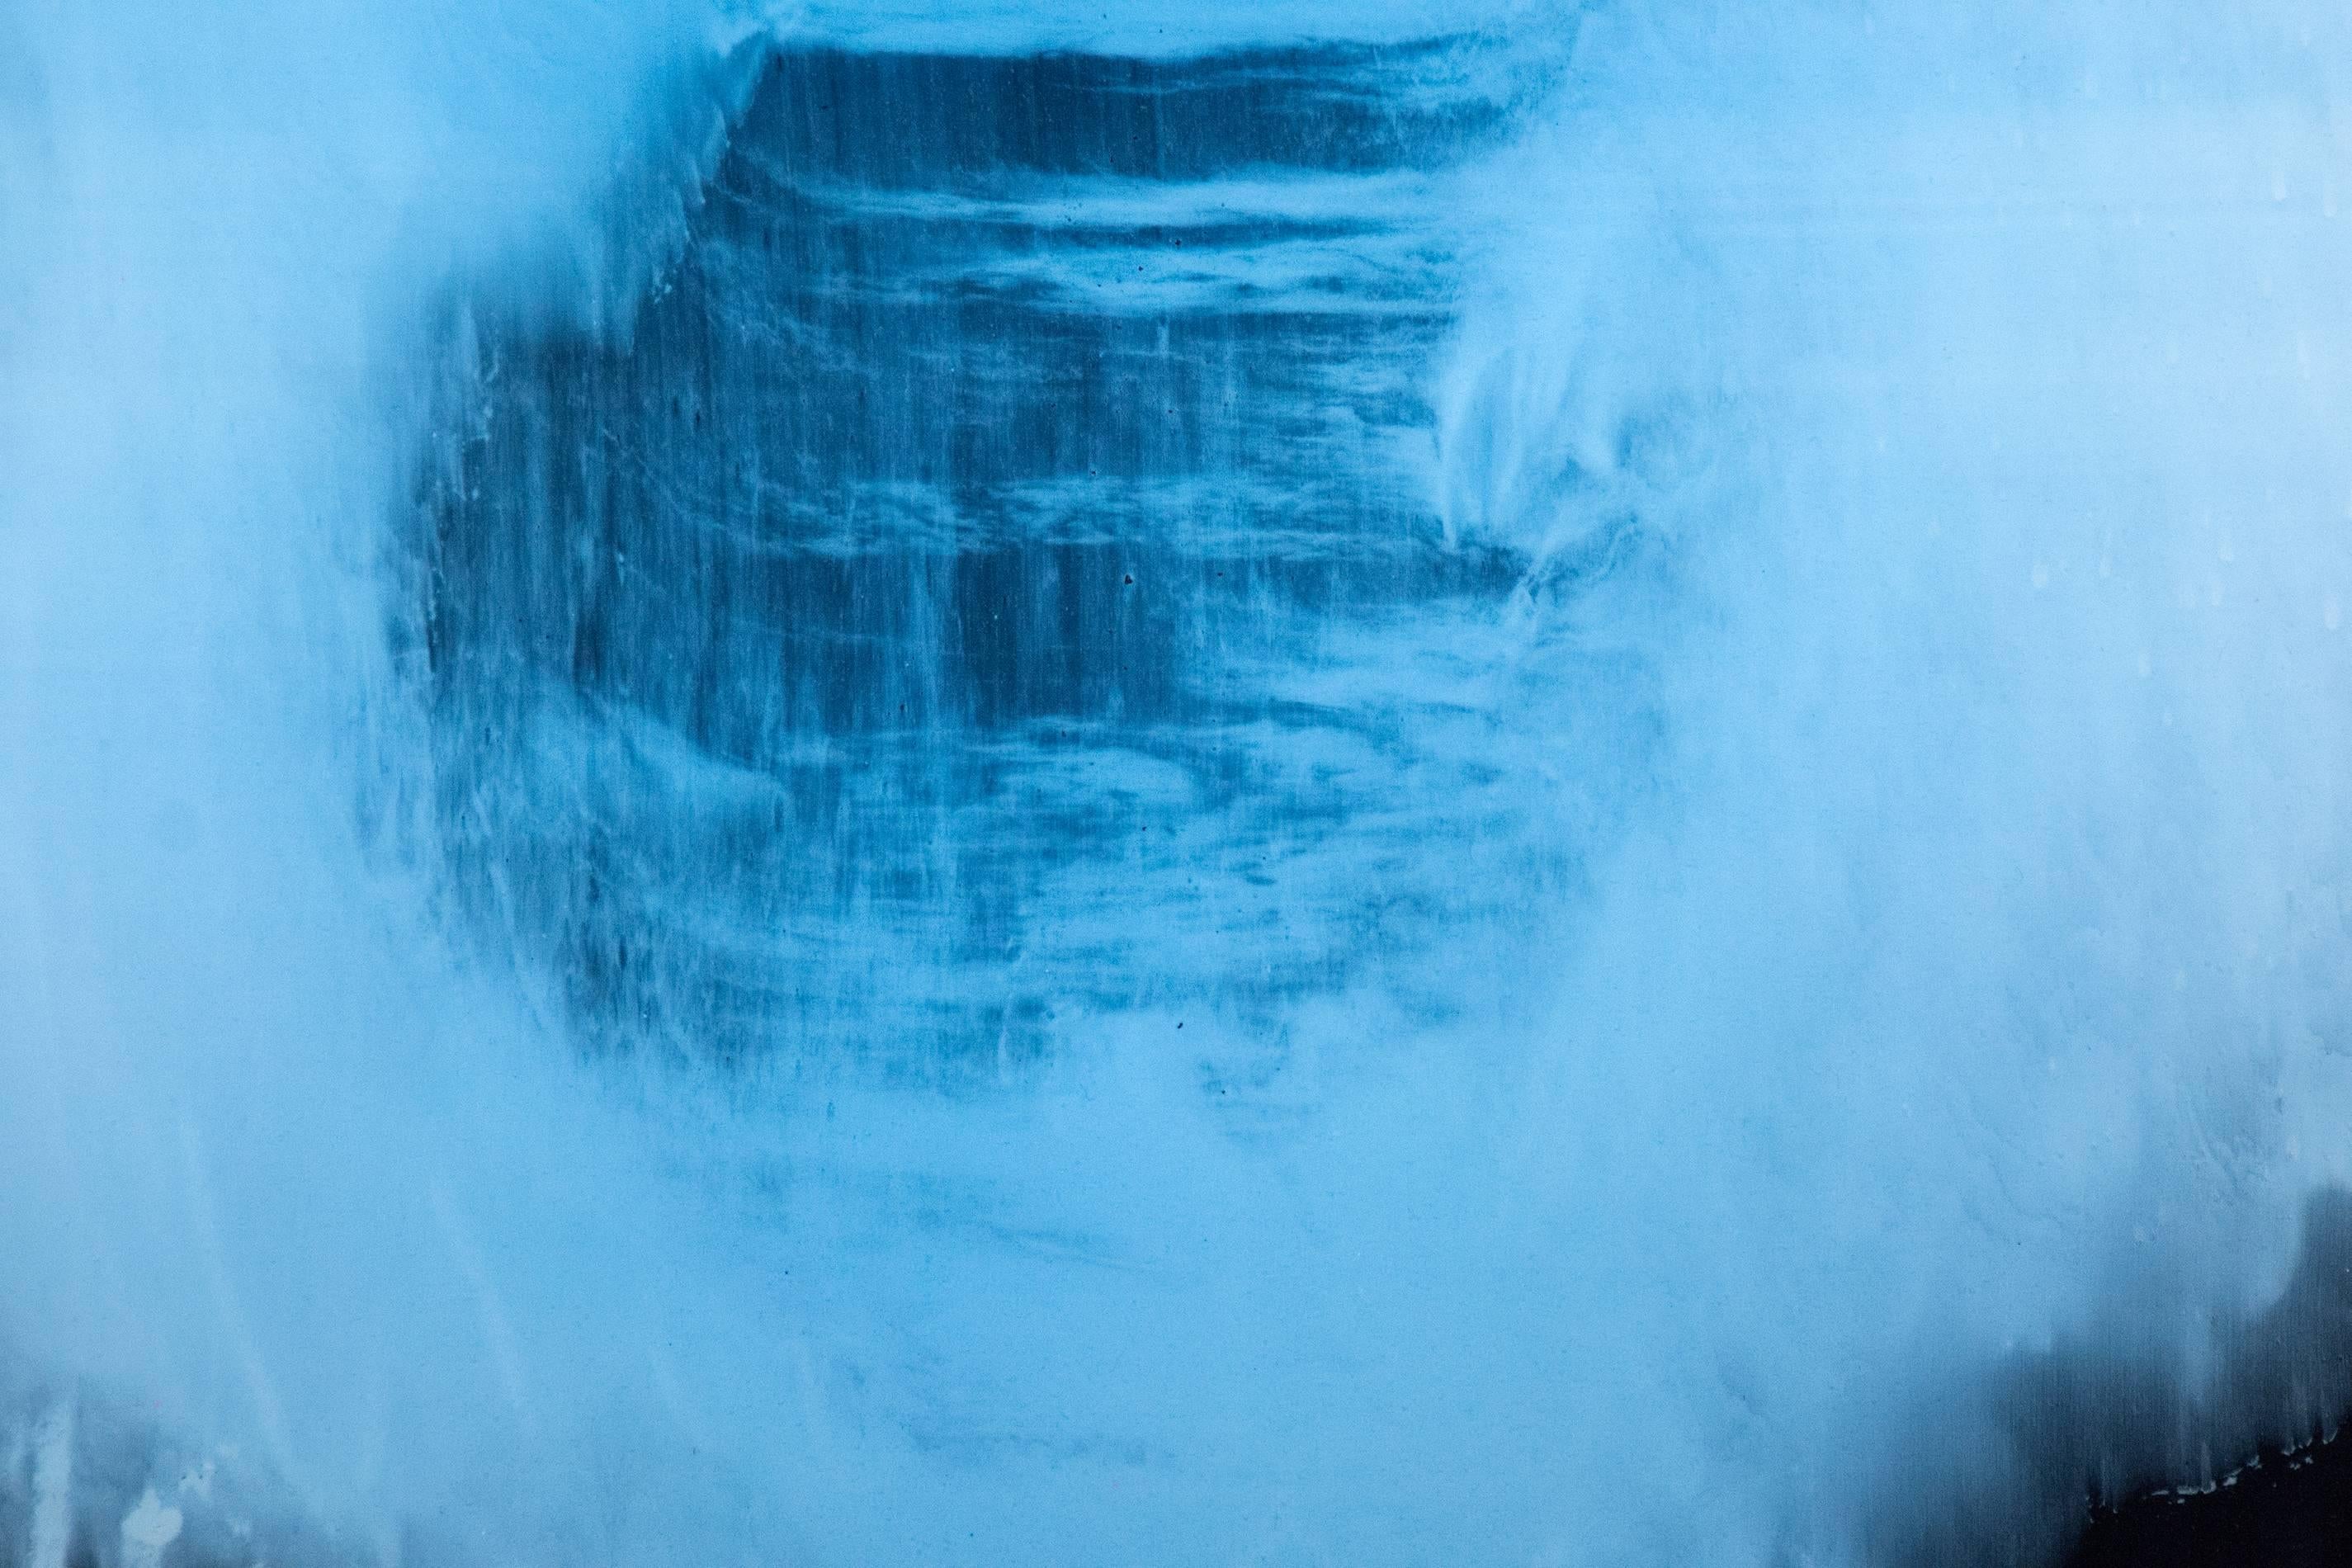 Auf diesem eleganten und gefühlvollen abstrakten Gemälde von Alice Teichert schwebt eine ringförmige blaue Wolke auf schimmernden Kohleschichten. Ein Wirrwarr von Glyphen, unterstrichen durch Streifen in Bonbonrot und -gelb, vervollständigt die